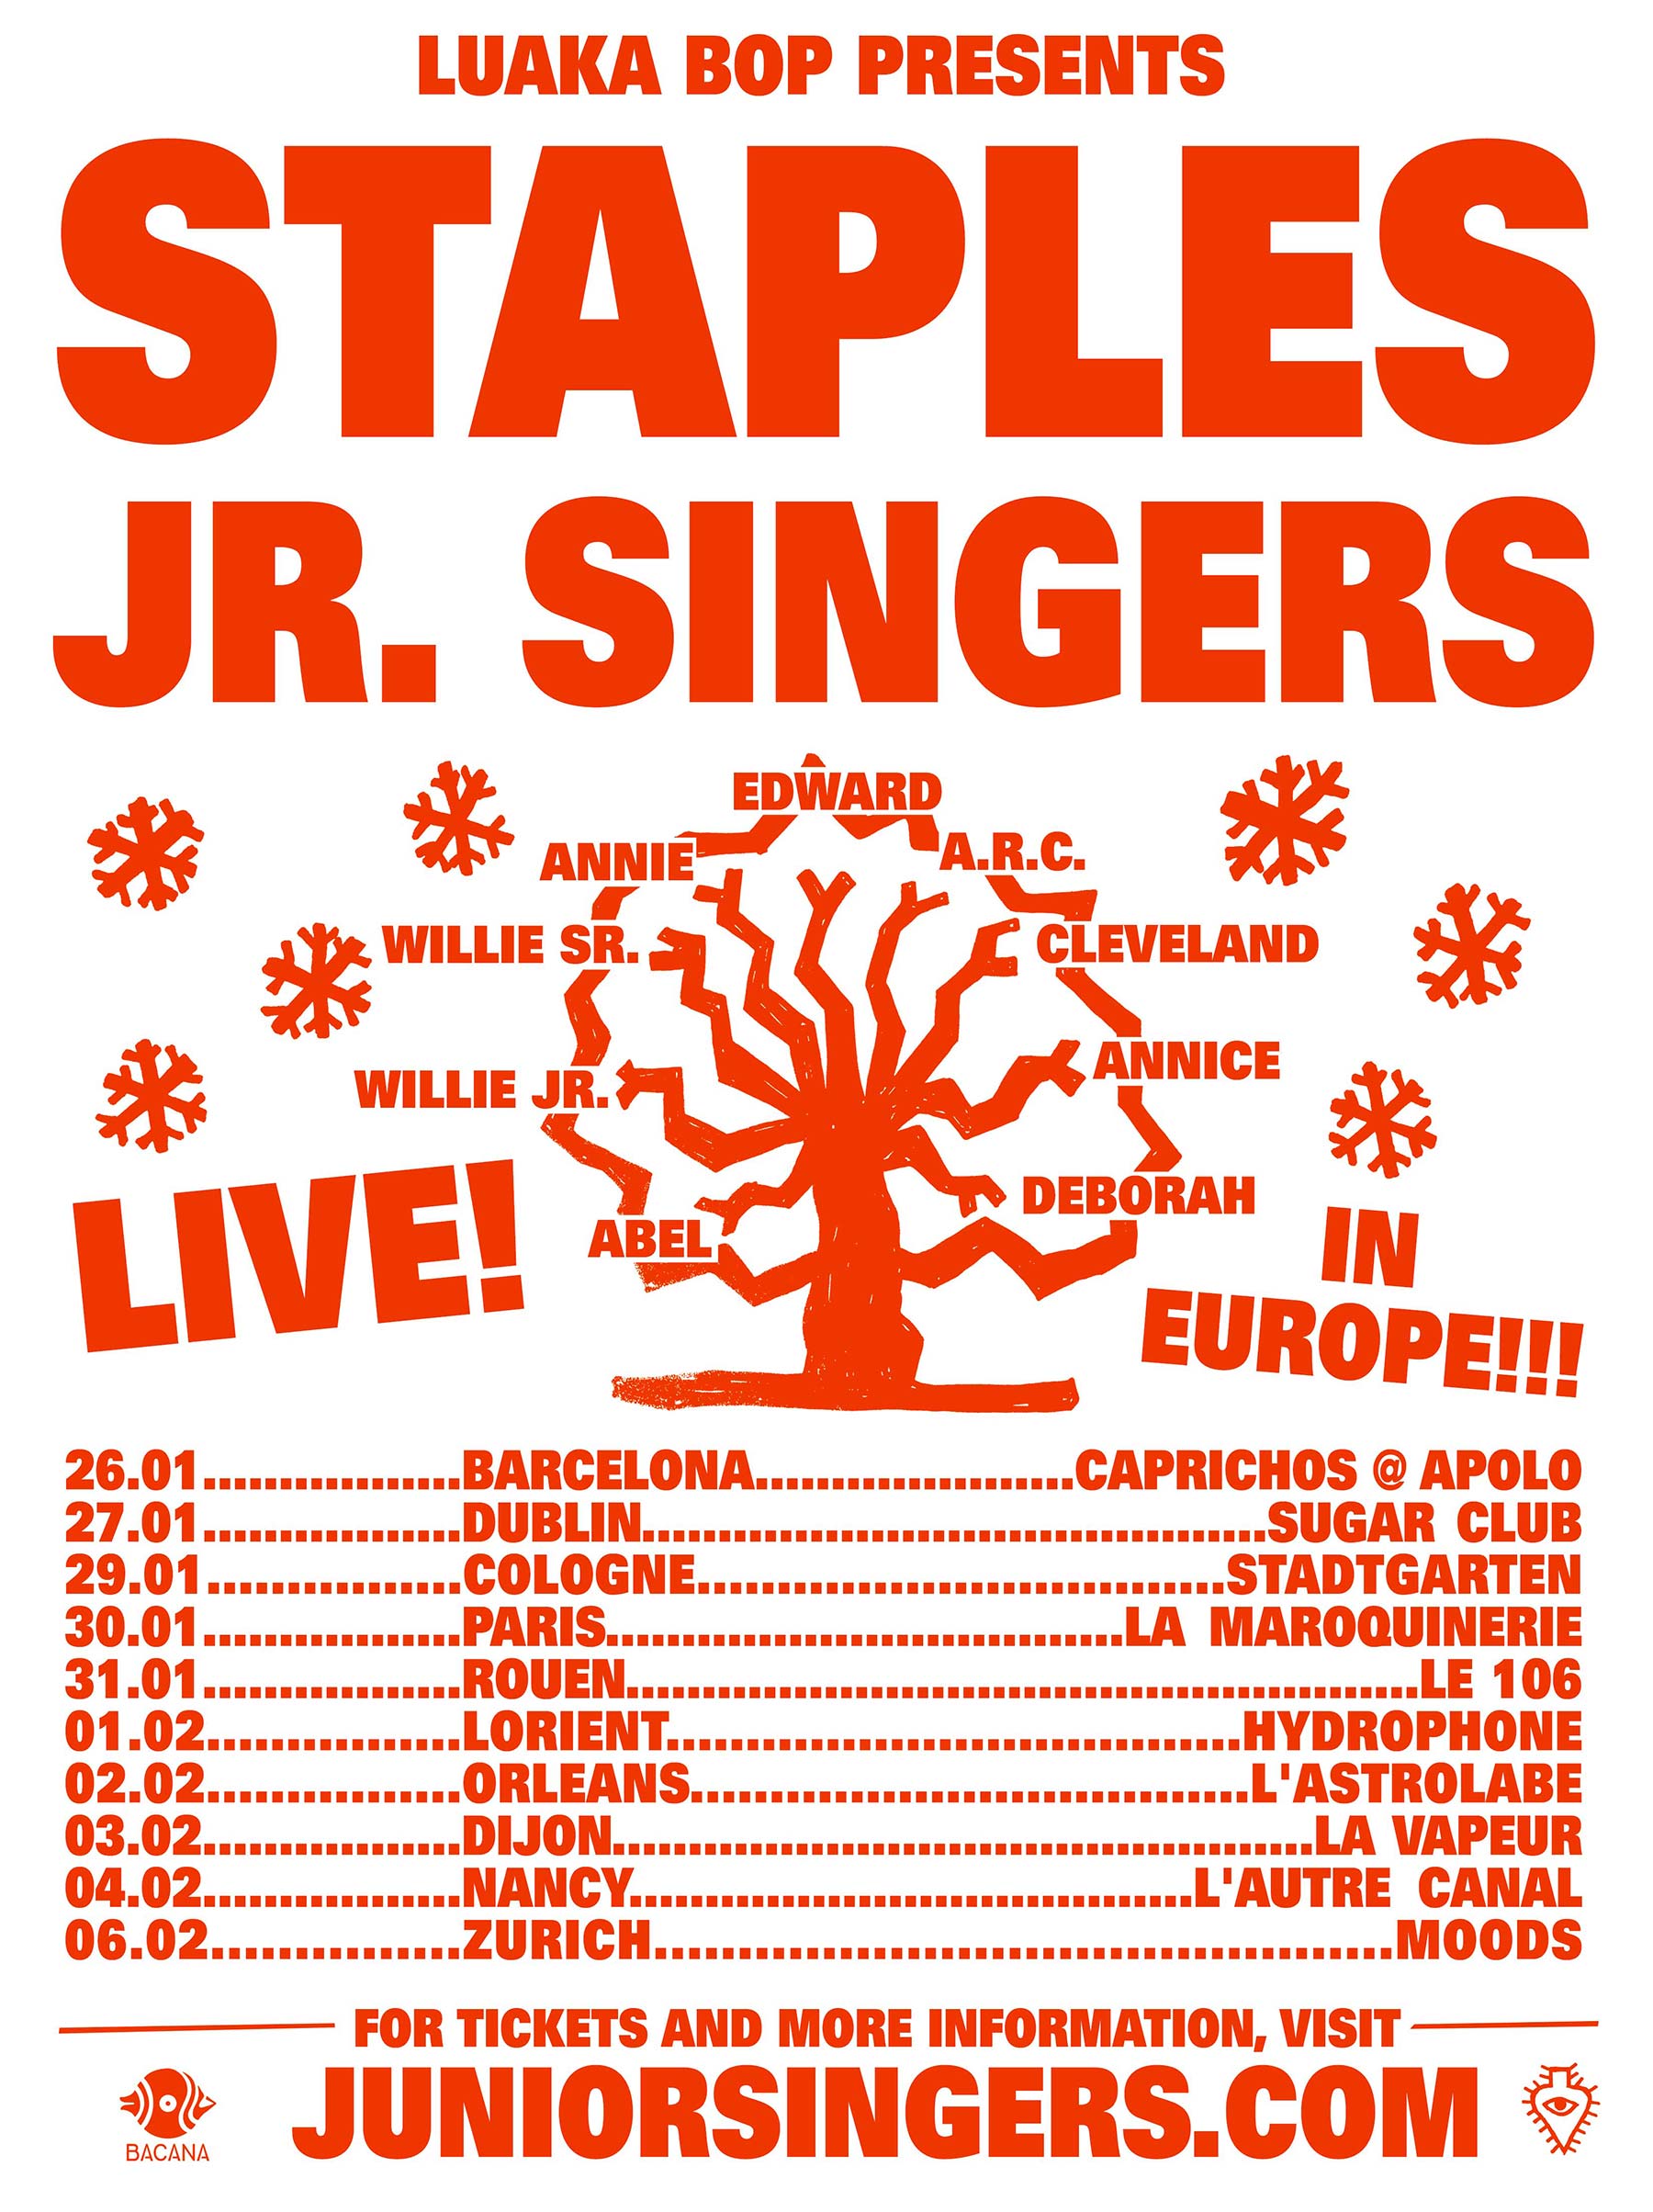 Staples Jr. Singers in Europe 2023!